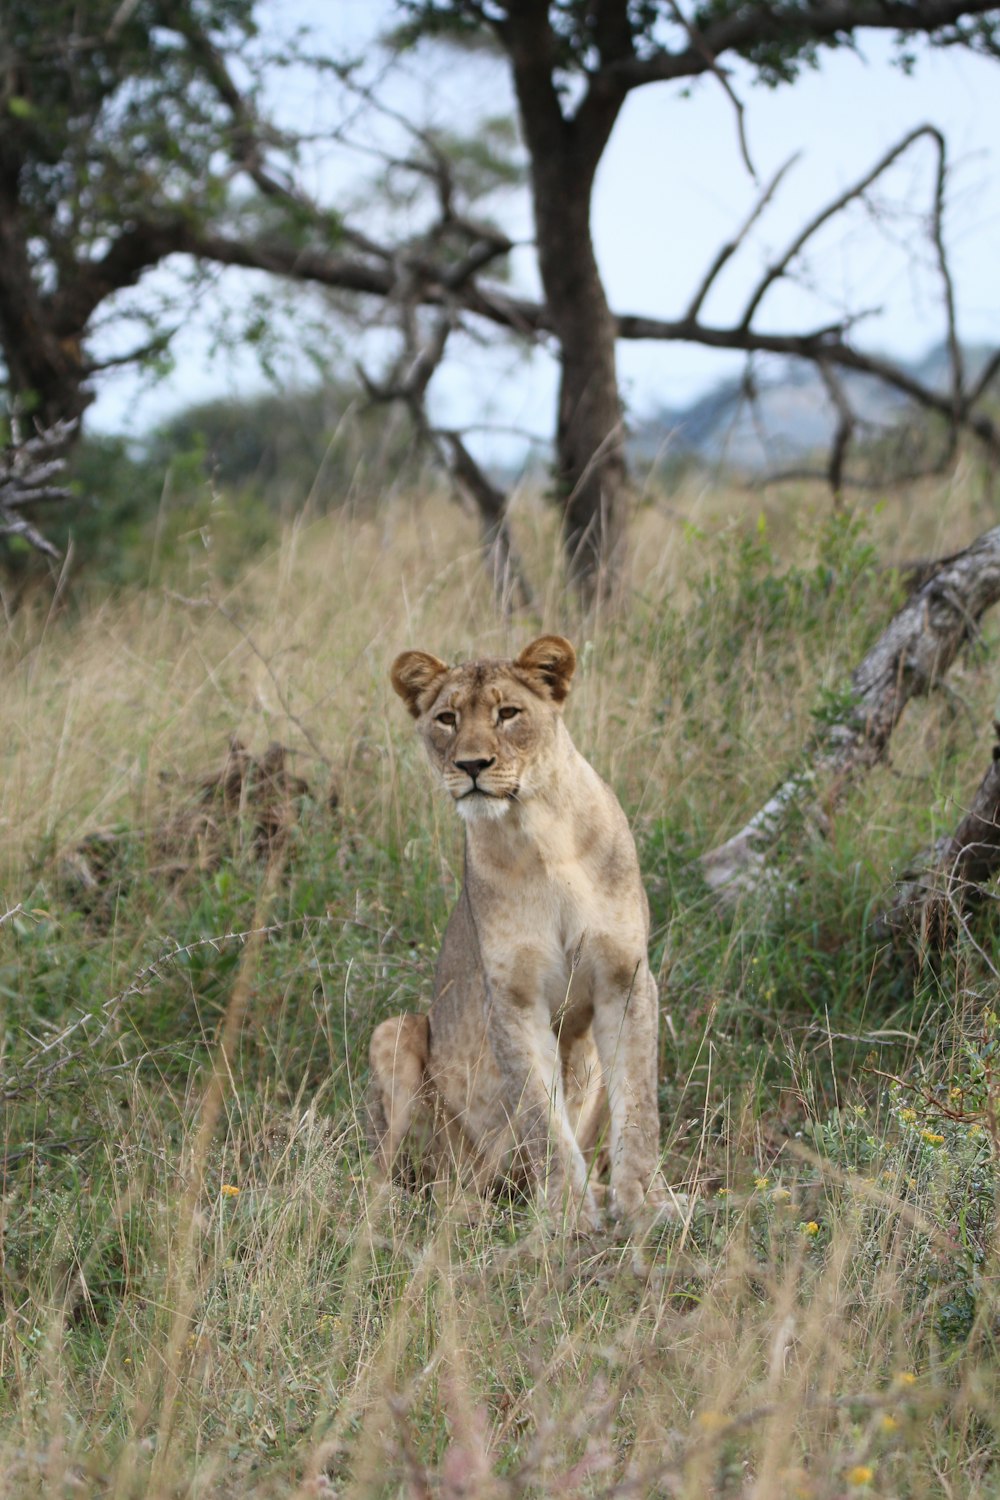 昼間、木の近くの草むらに座っている雌ライオン